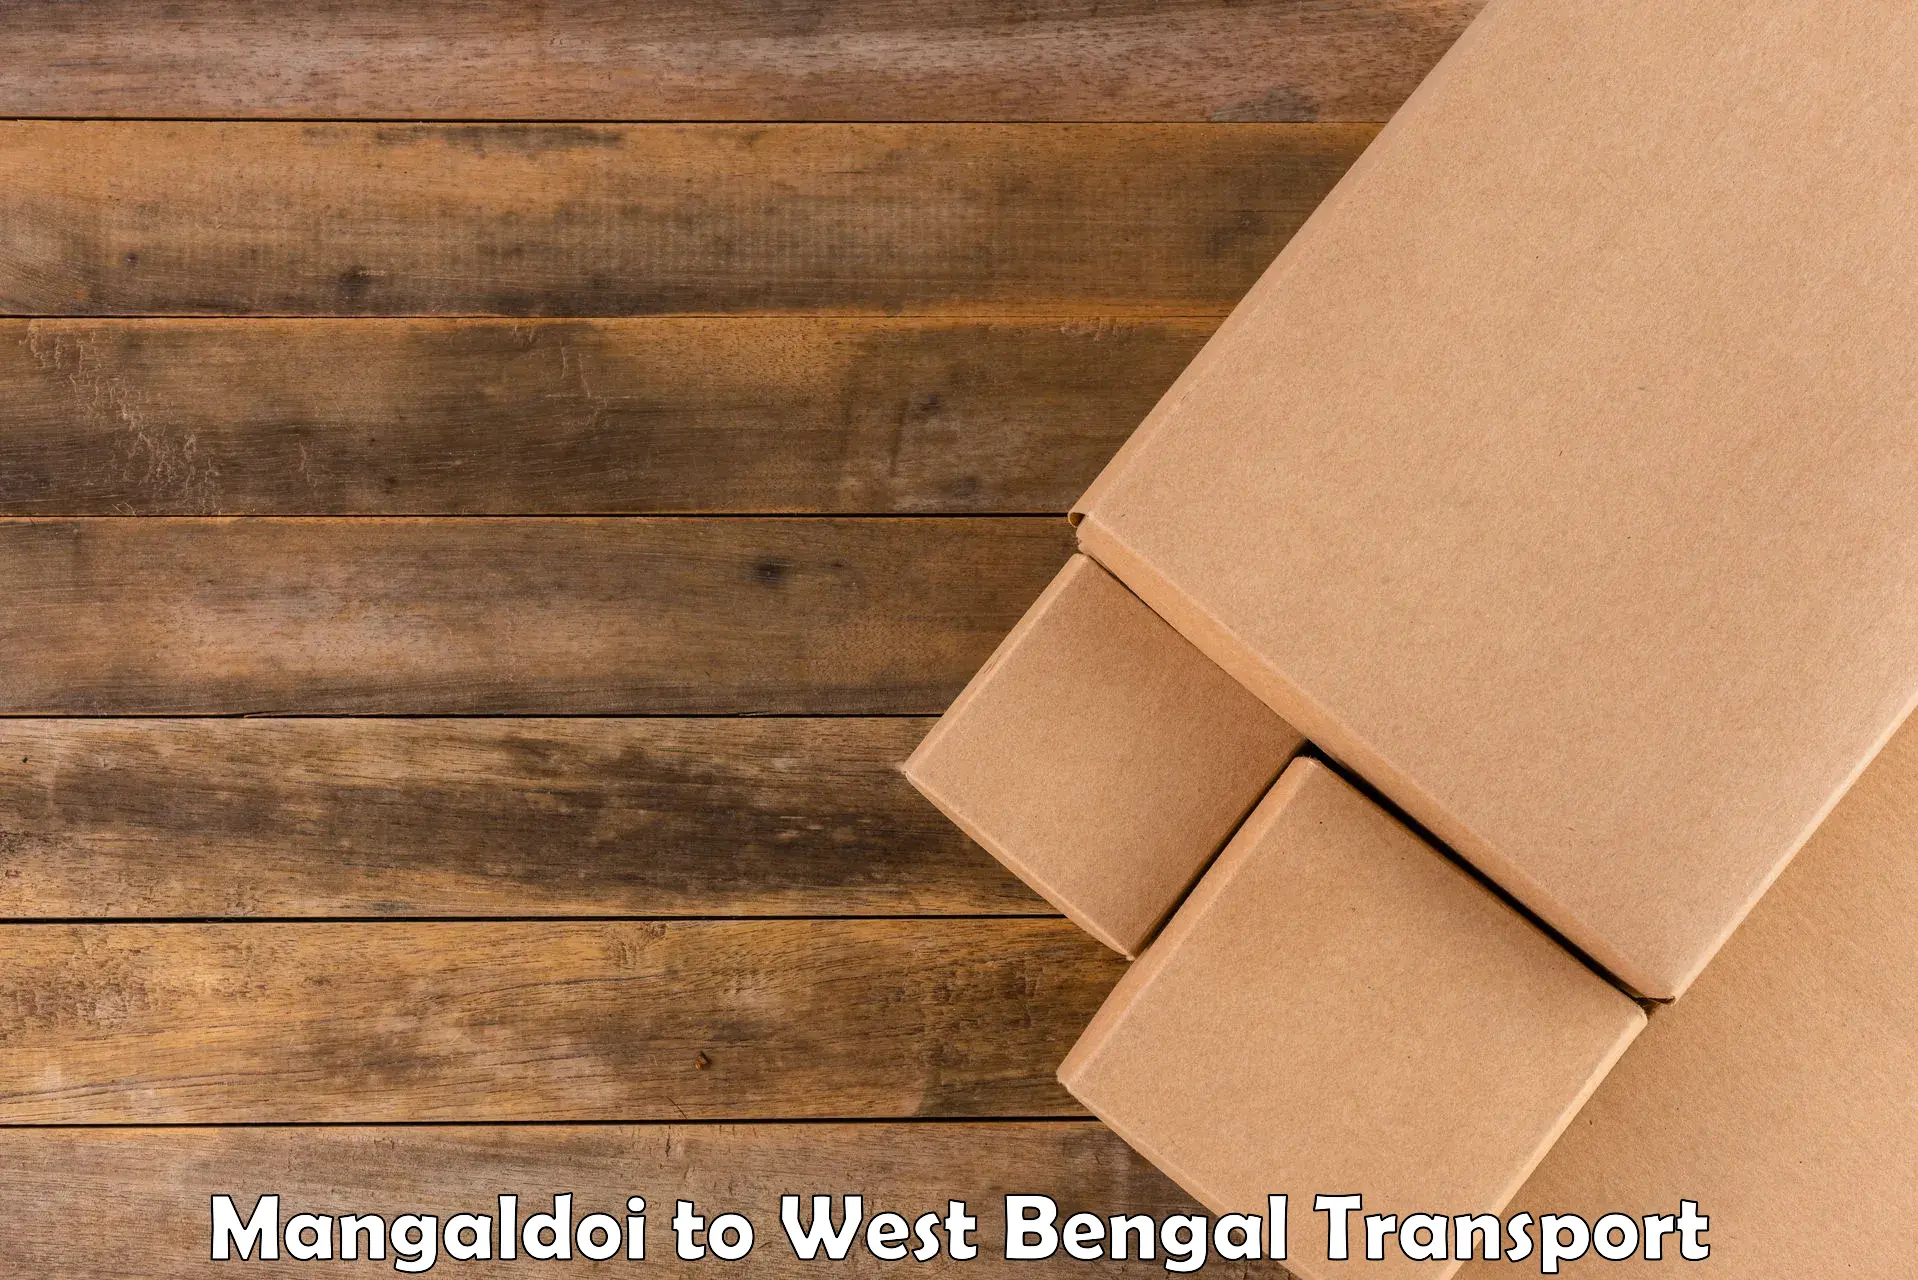 Truck transport companies in India Mangaldoi to Morgram